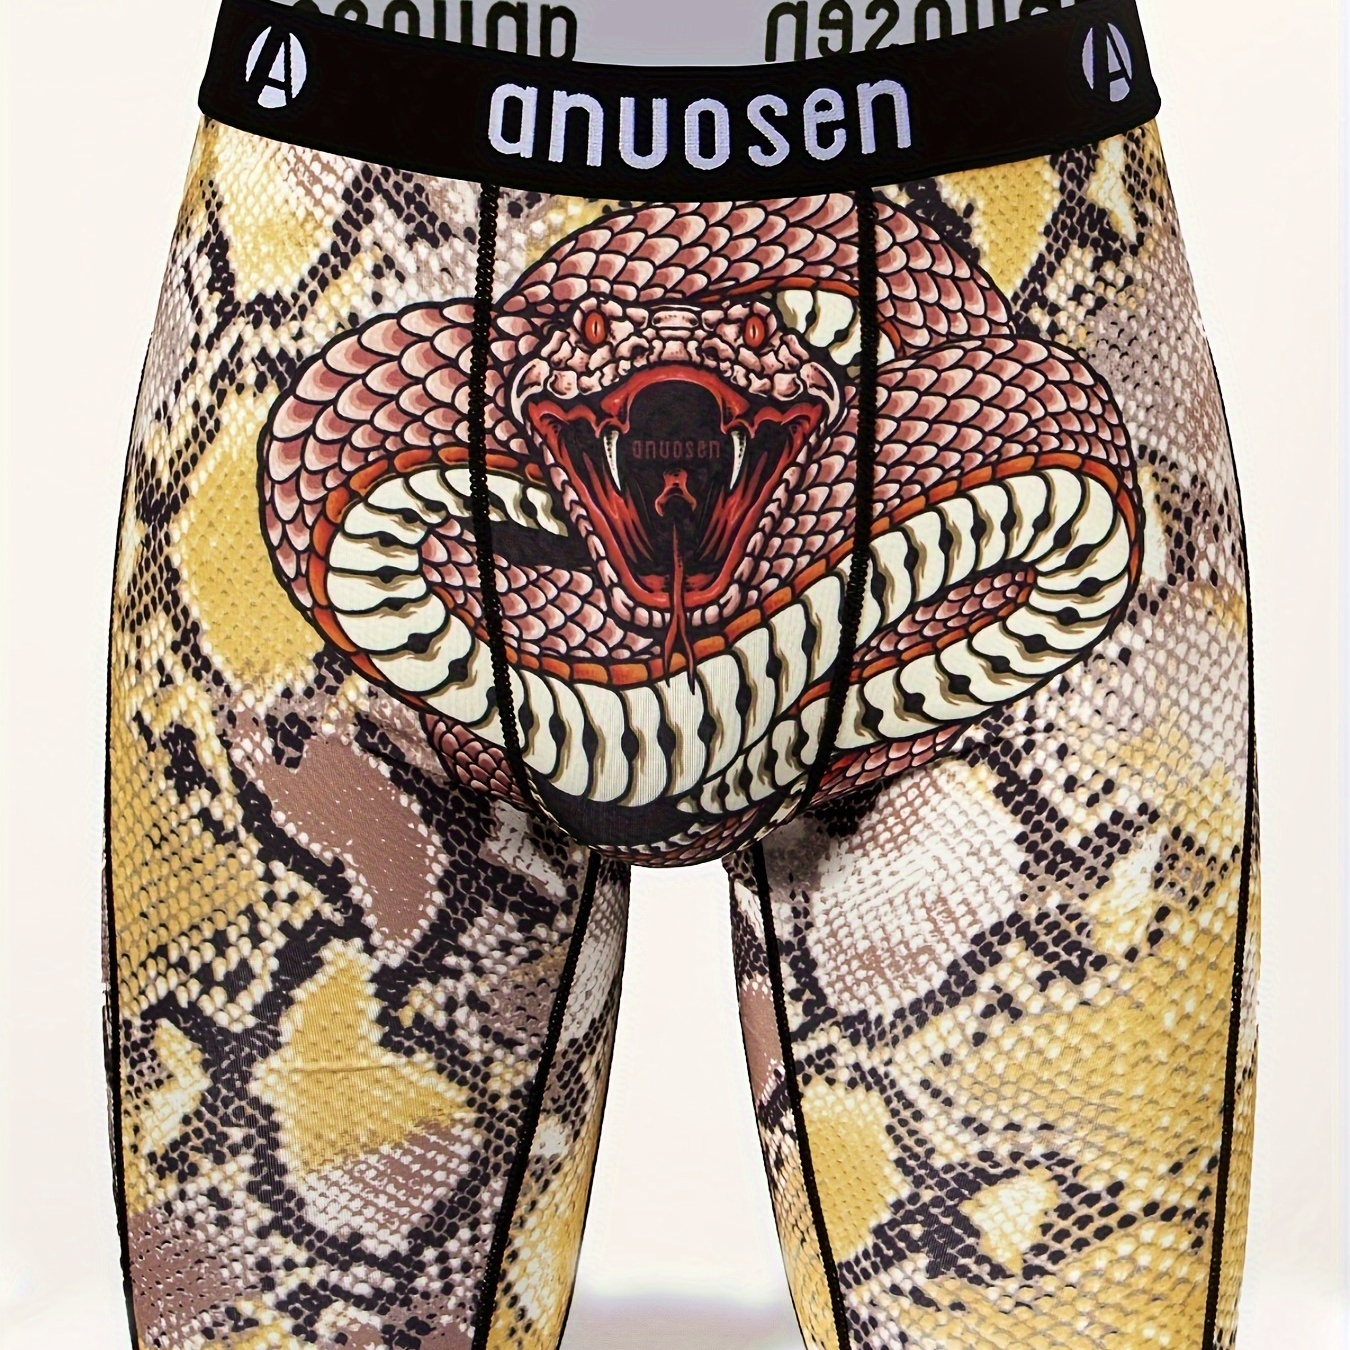  Cobra-Snake Men's Underwear Briefs Soft Underwear with Stretch  Waistband Underpants : Sports & Outdoors